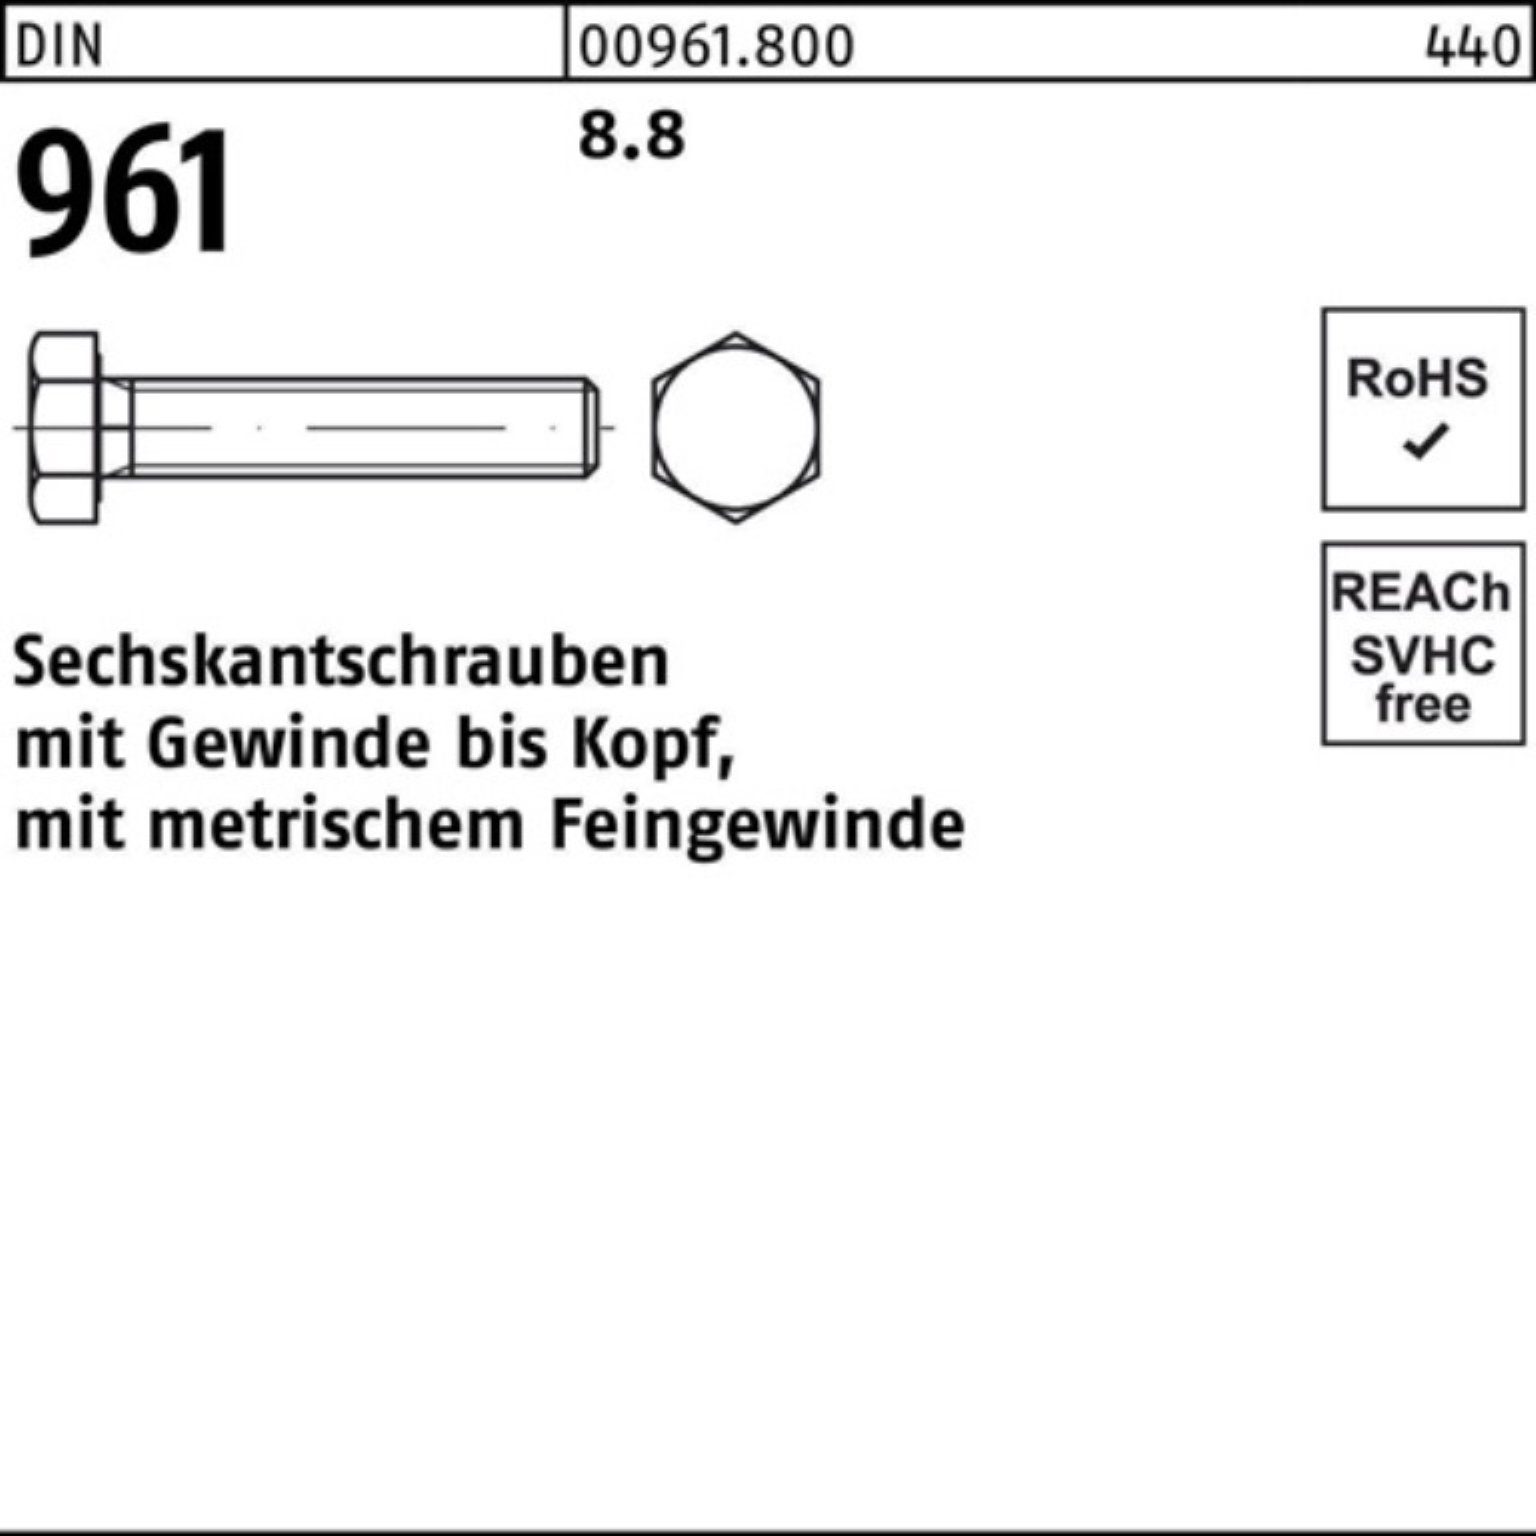 DIN 50 Stück Sechskantschraube 961 Sechskantschraube VG Pack 8.8 Reyher M14x1,5x100 100er DIN